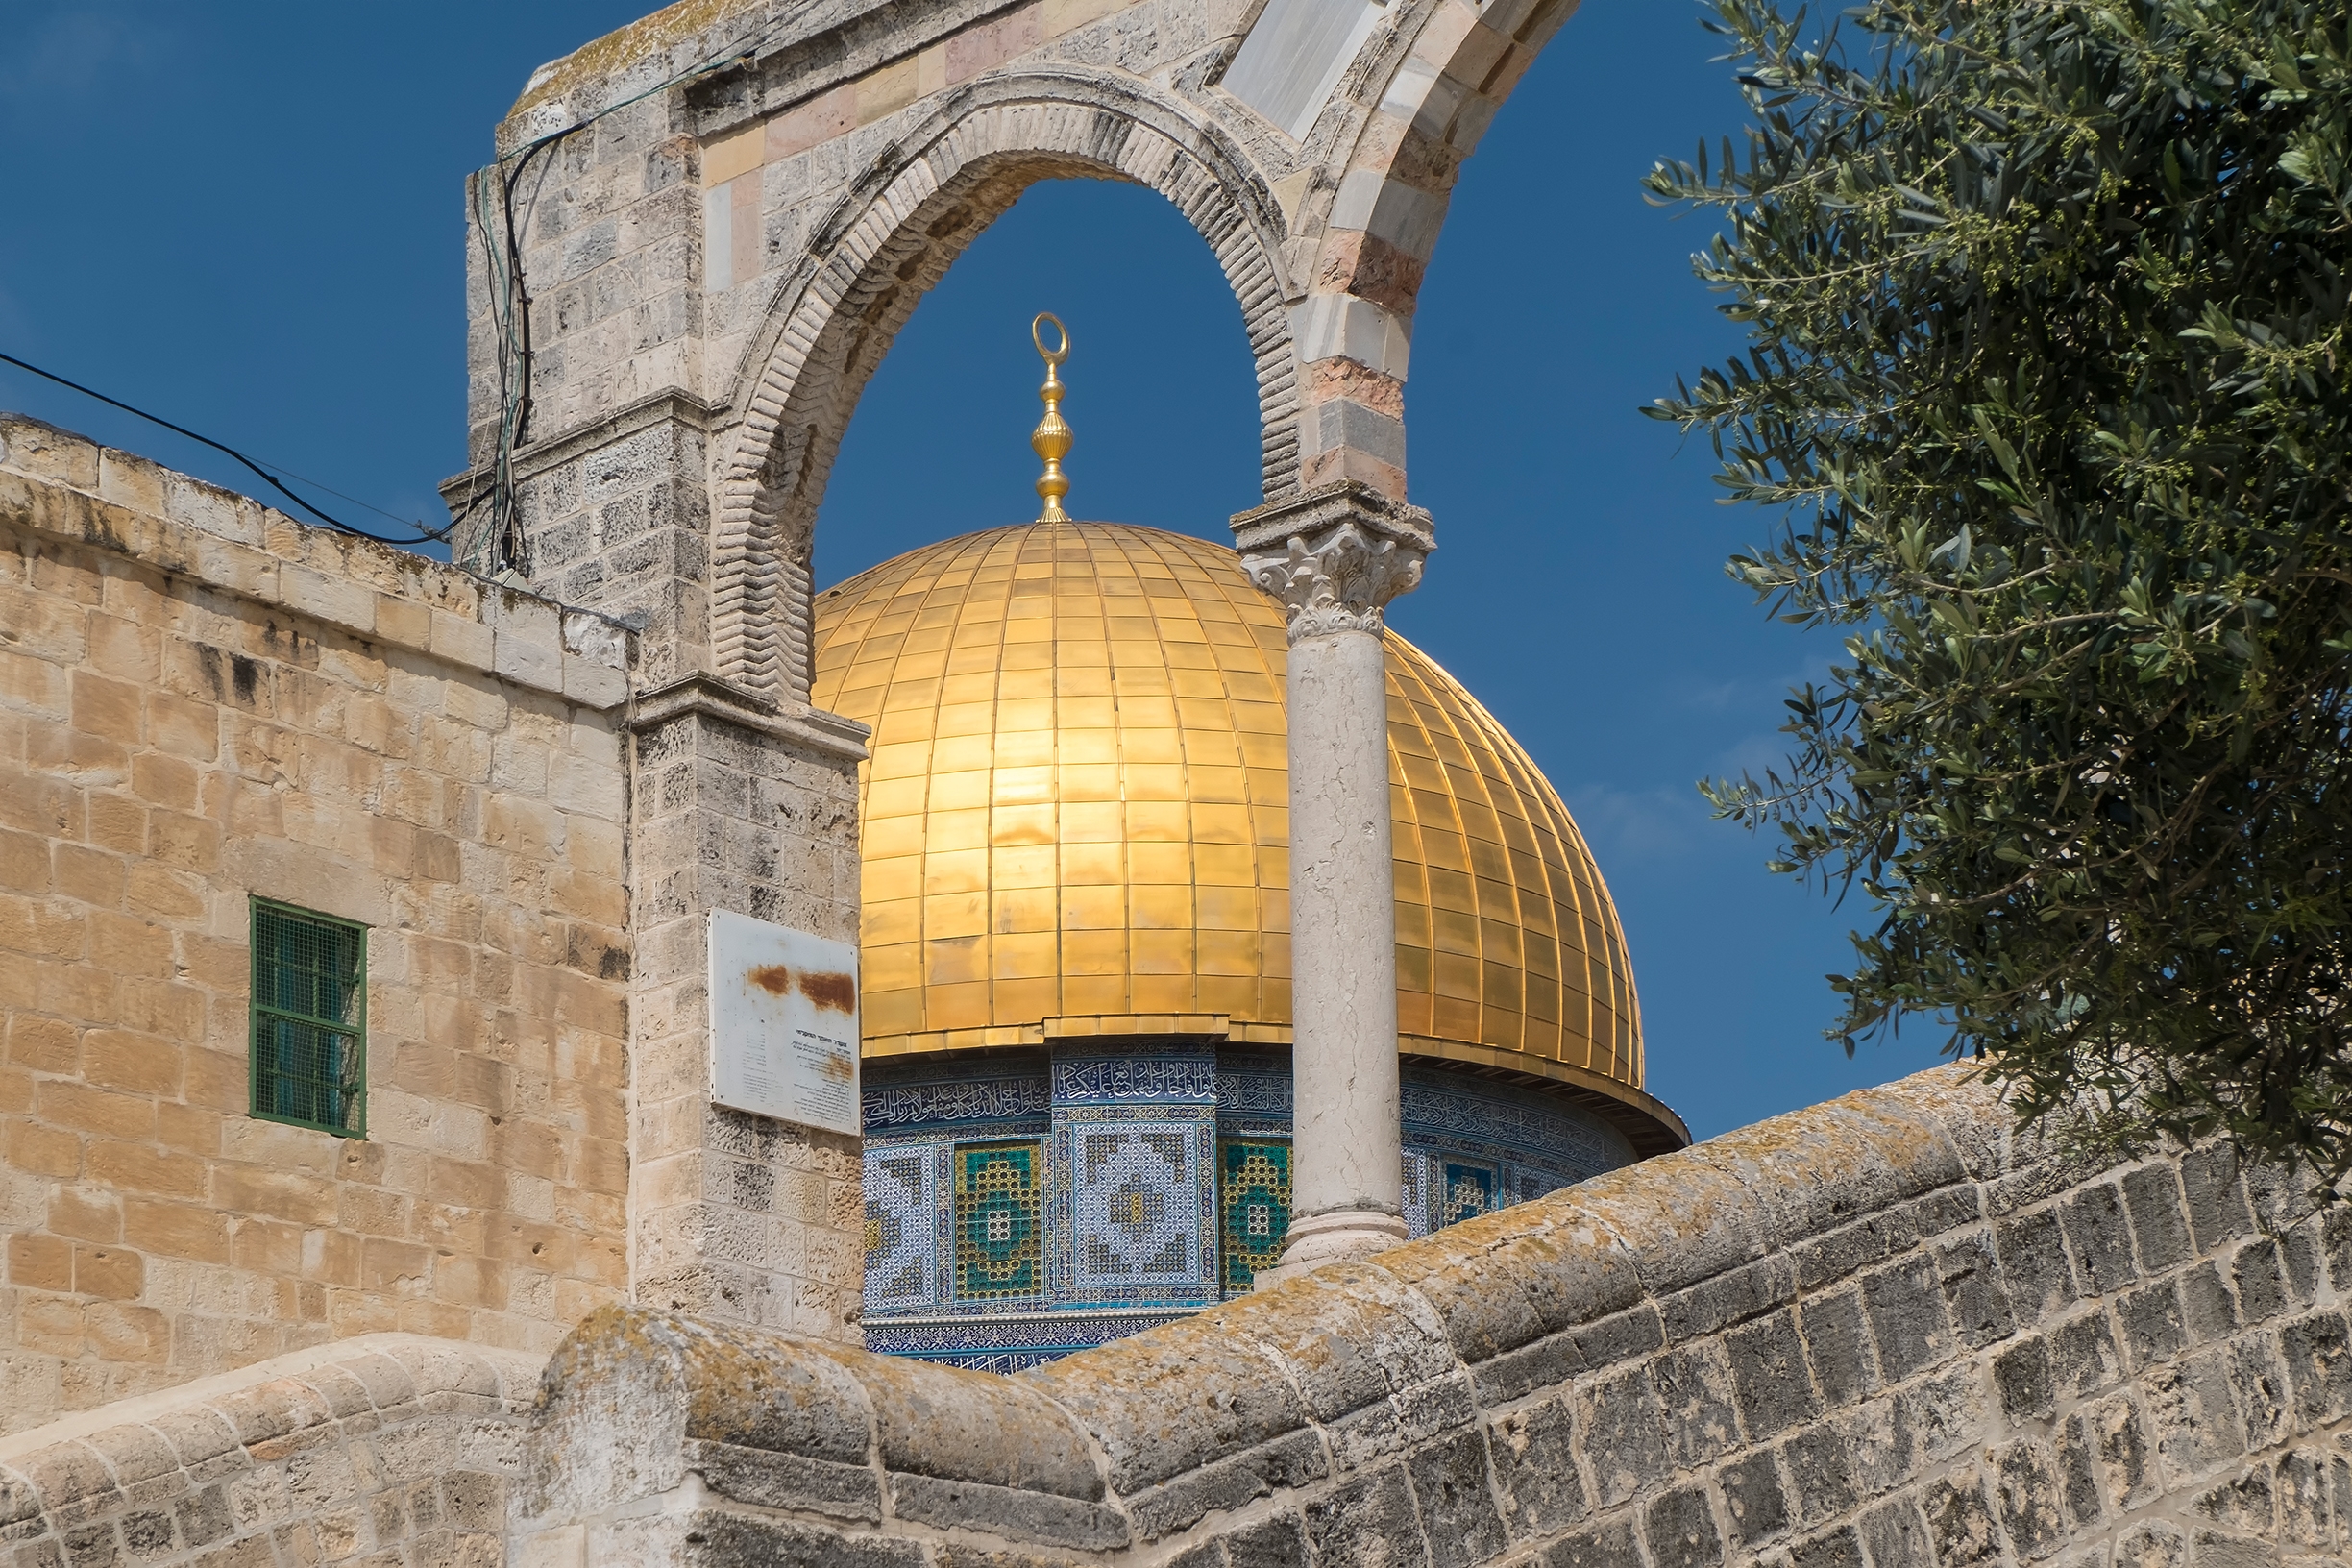 Старый город Иерусалима, Купол Скалы.
Ralf Roletschek / Wikimedia